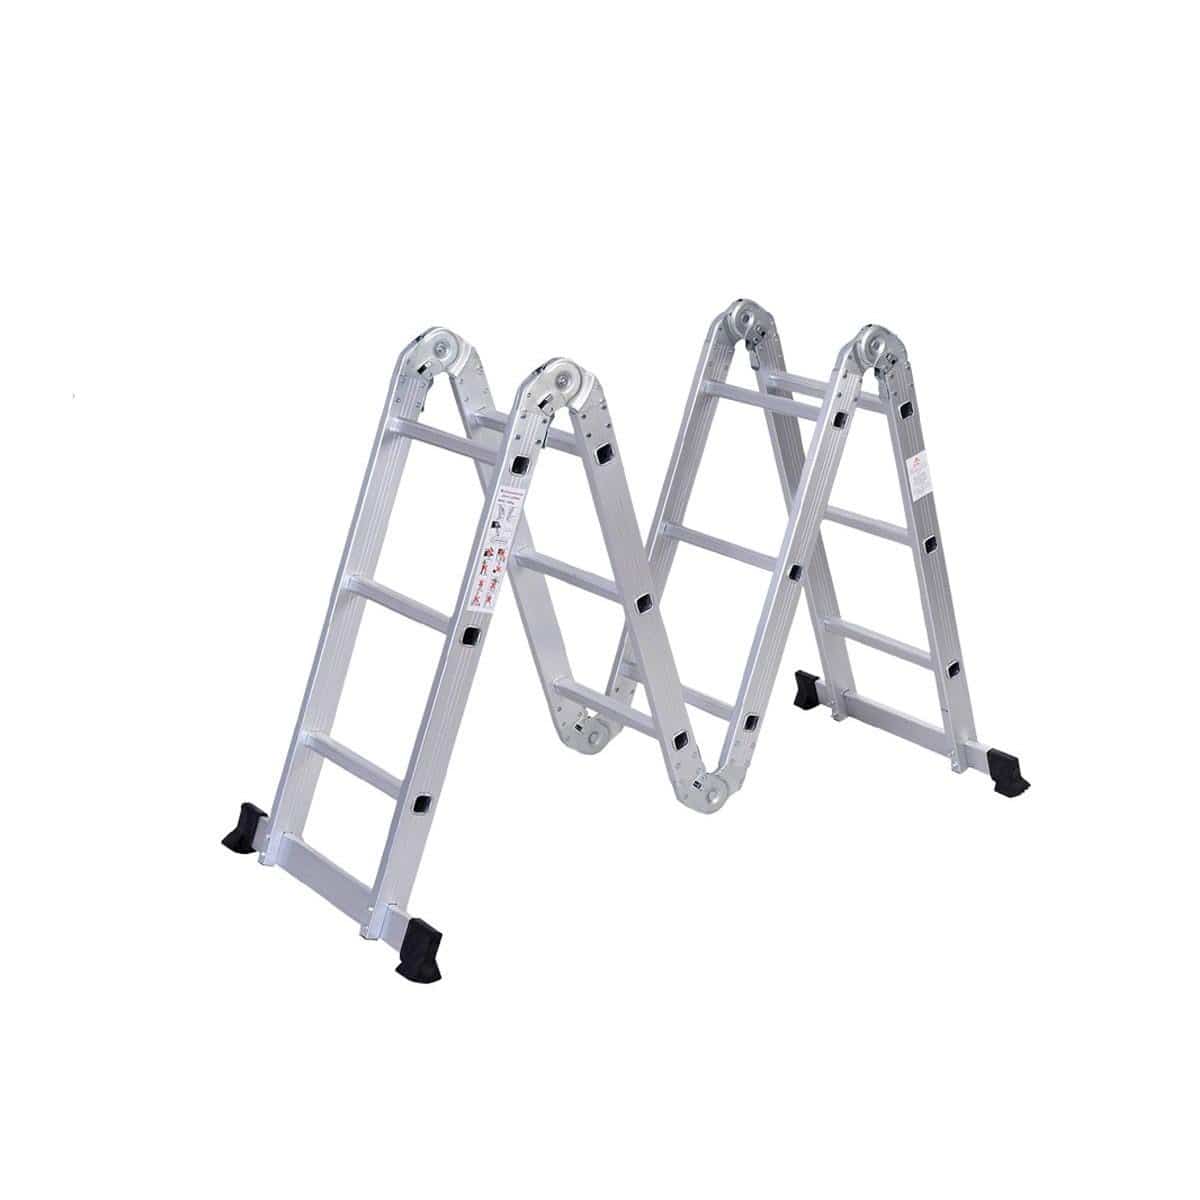 SUMO KING Heavy Duty Multi Purpose Ladder Flat Foot (14 STEPS)